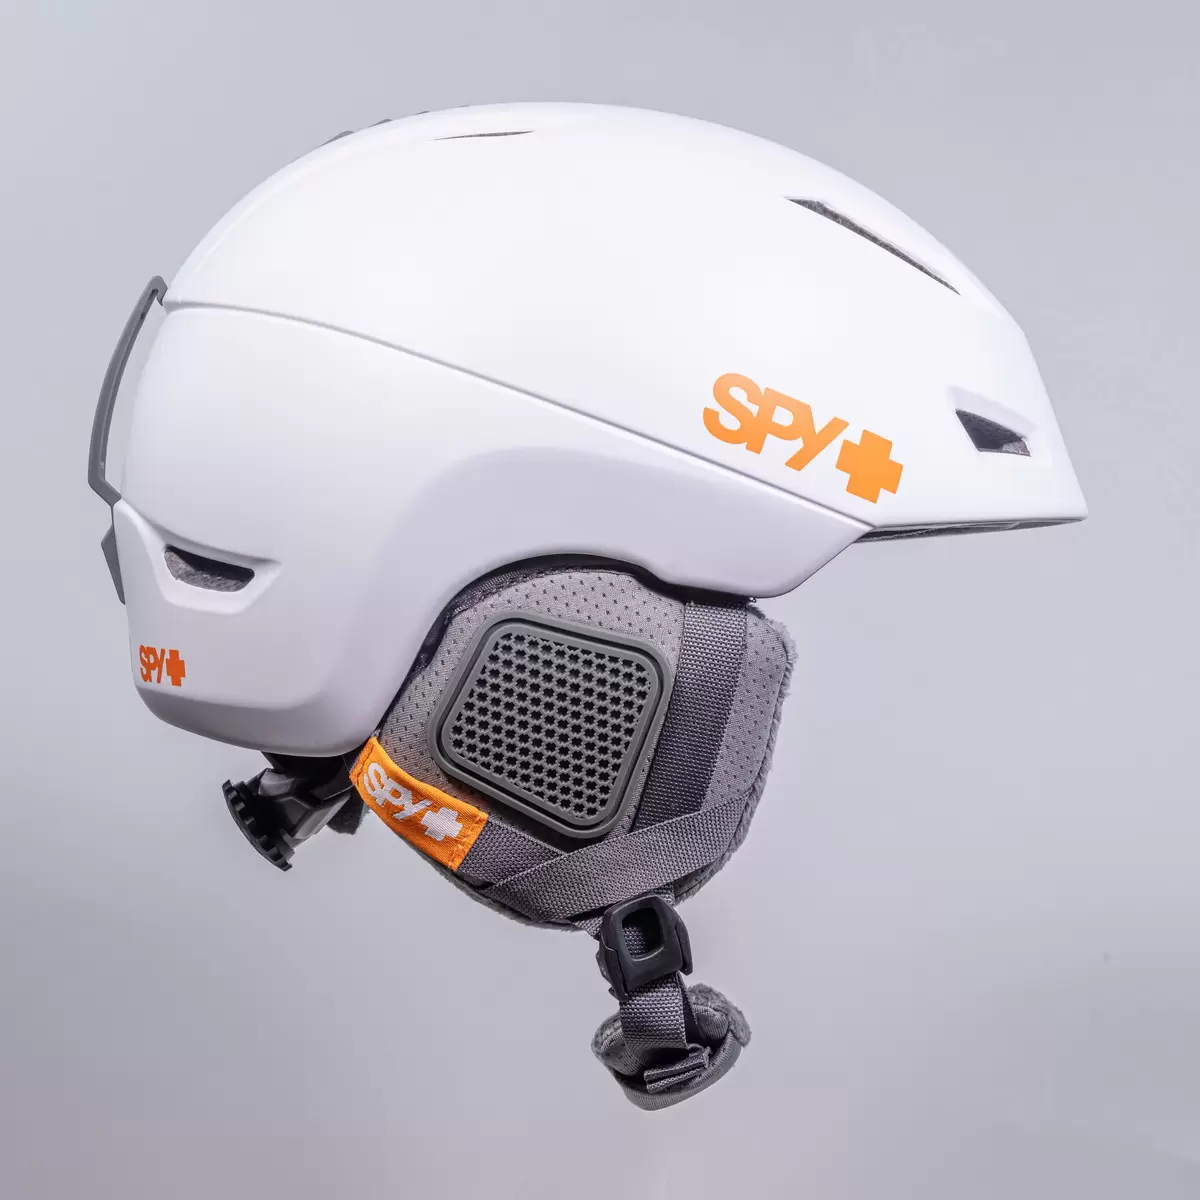 スパイ 大人用スノーヘルメット MIPSテクノロジー搭載 ホワイト / M